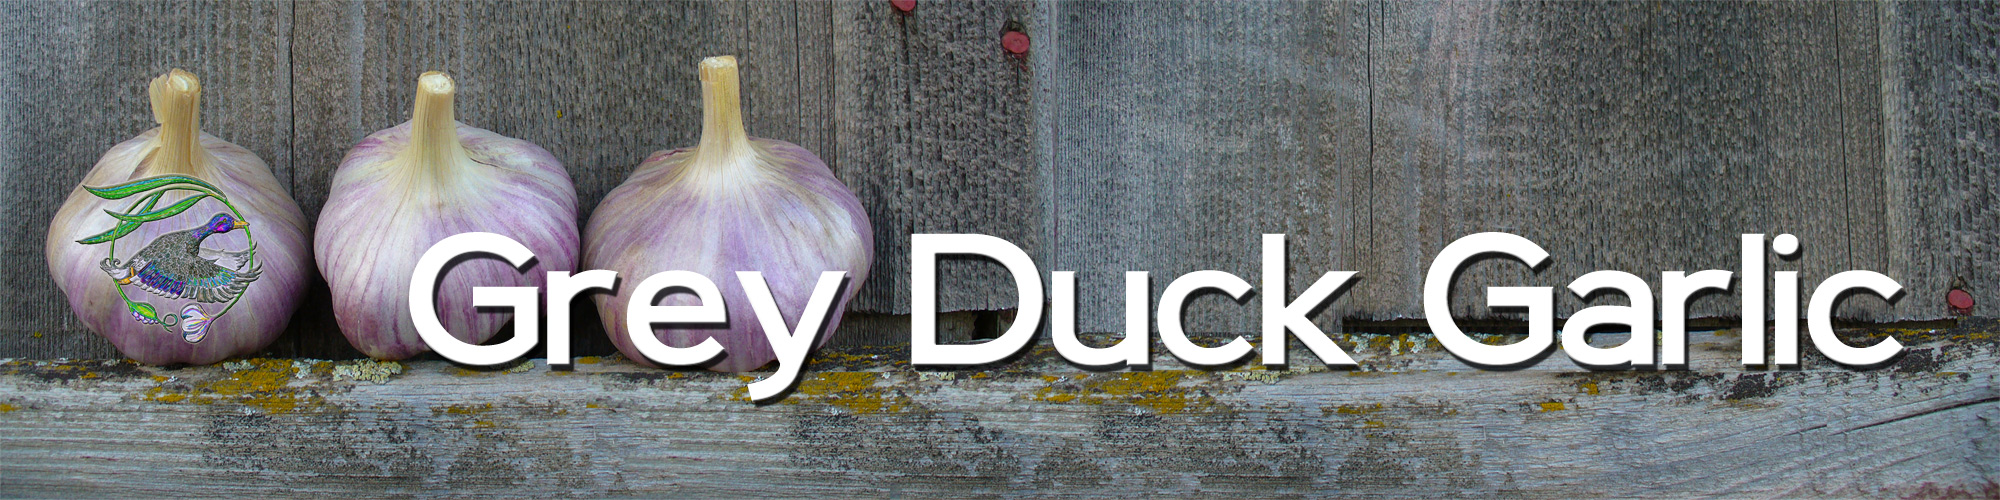 Grey Duck Garlic, growing garlic organically